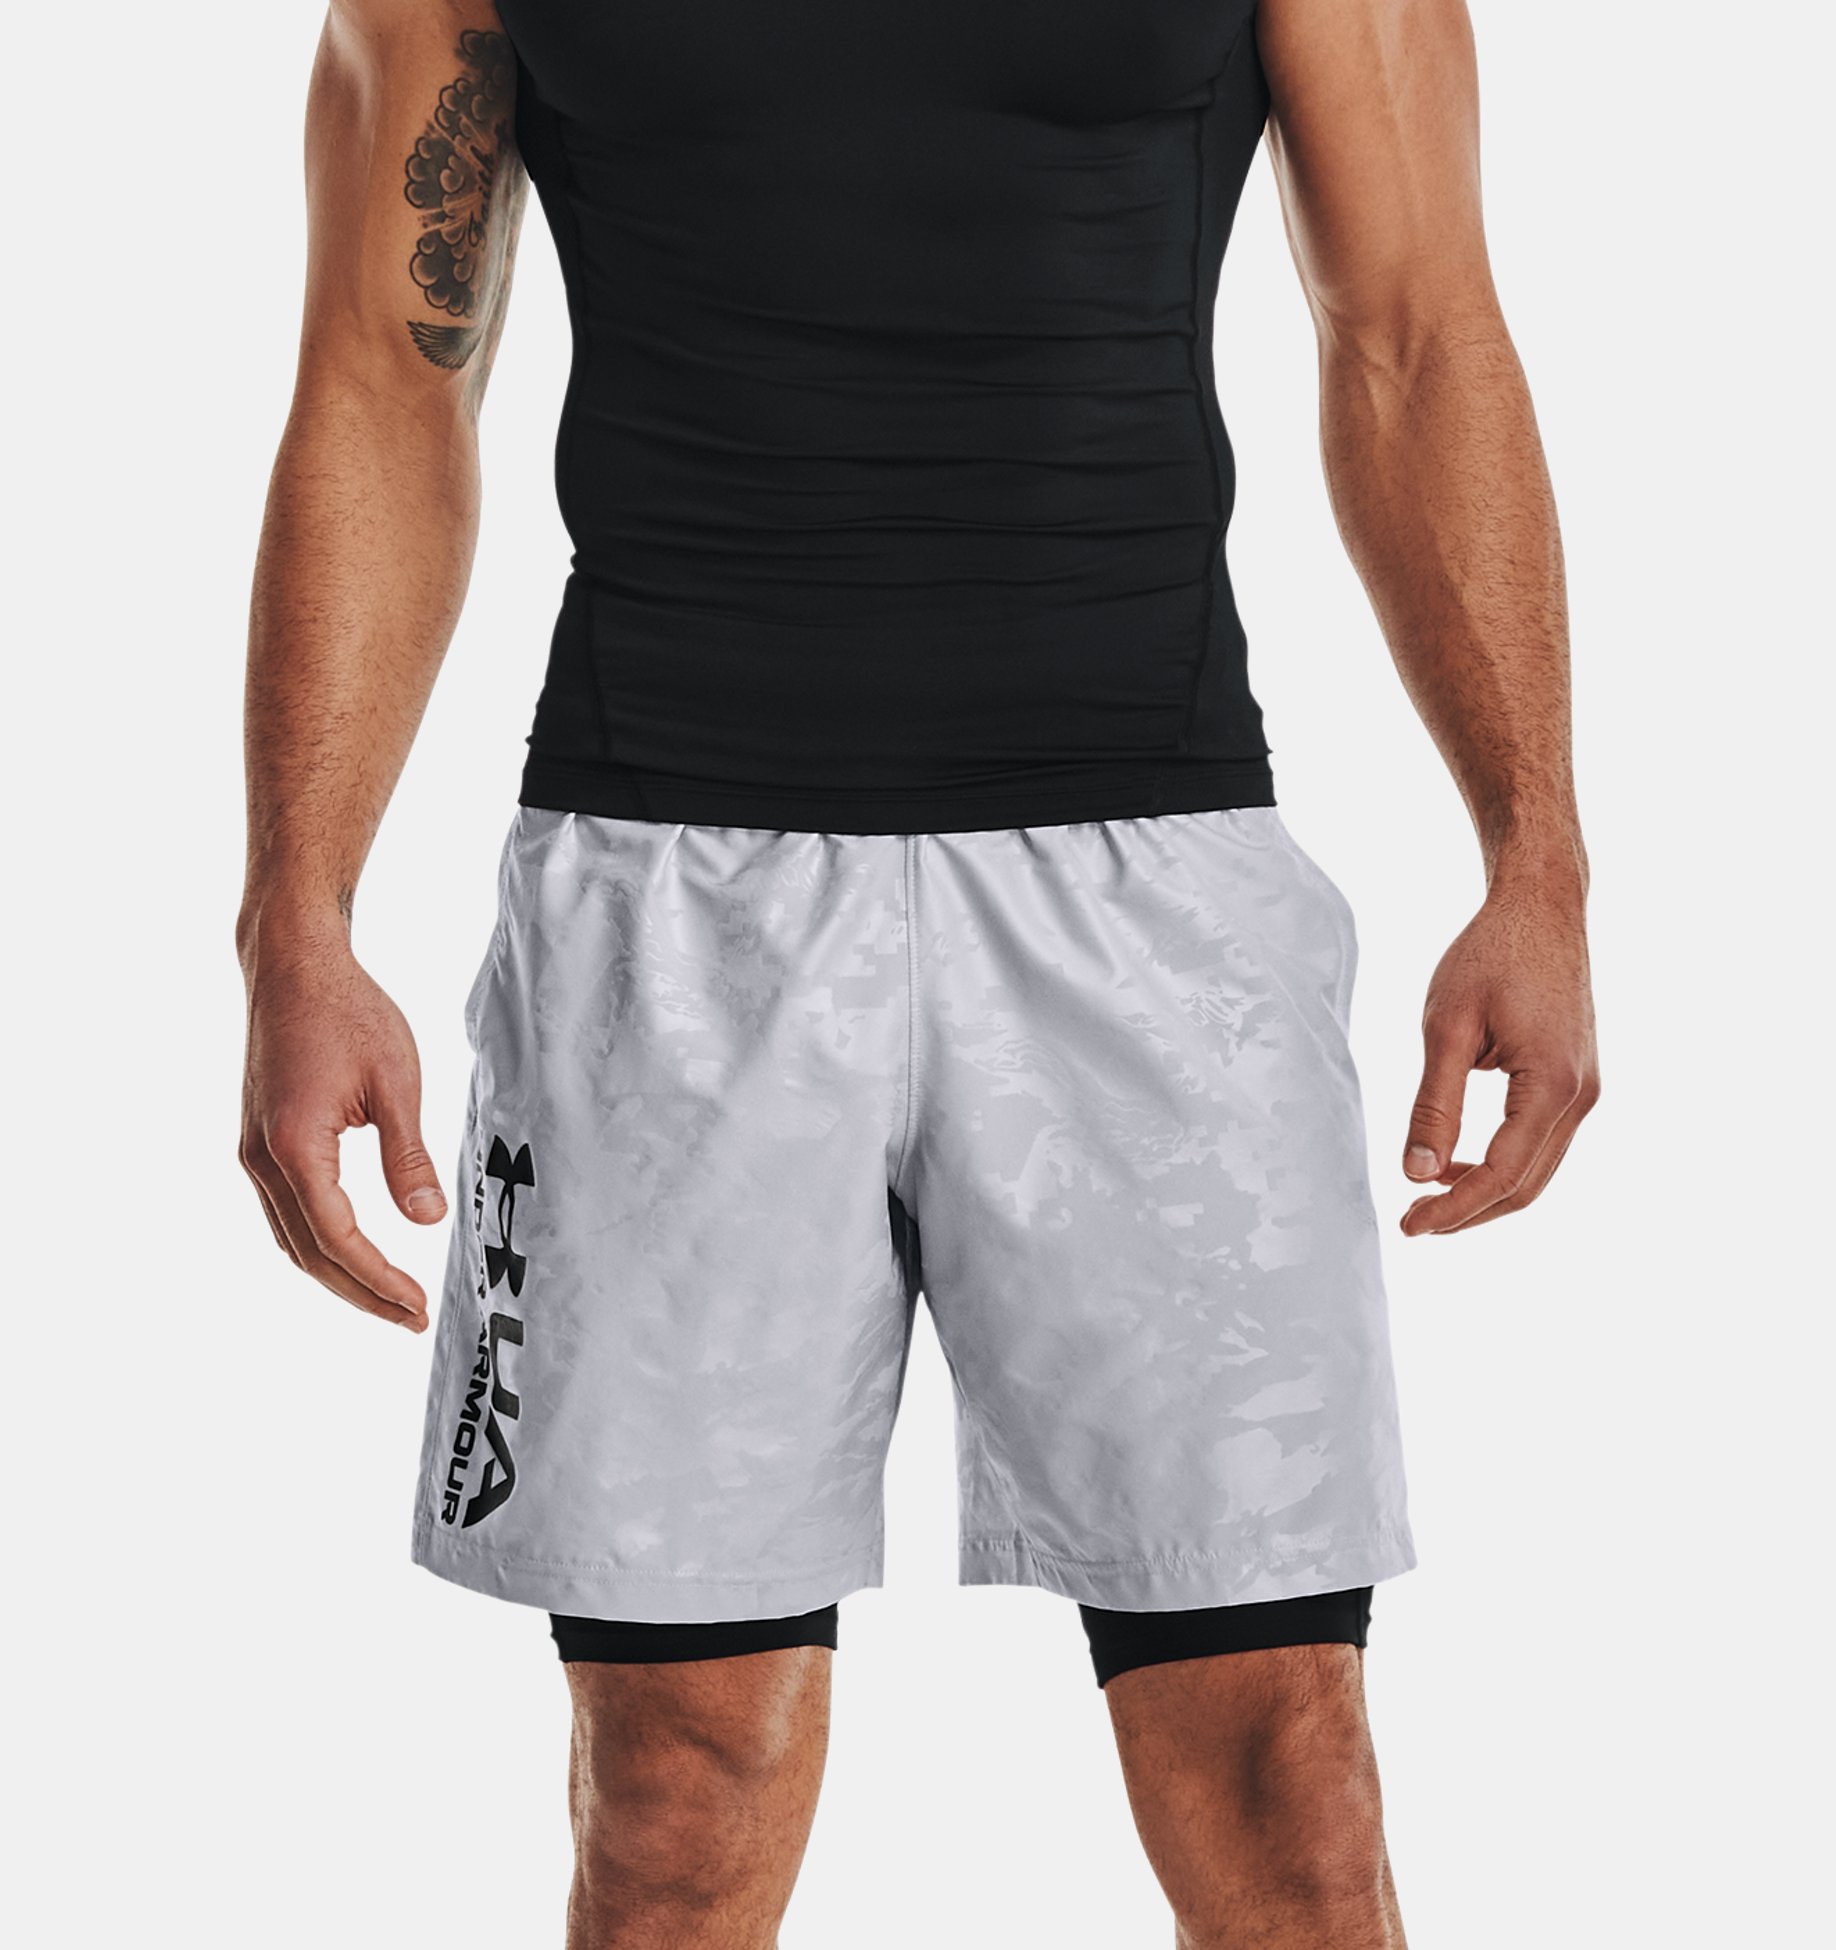  Under Armour - Camiseta de compresión HeatGear sin mangas para  hombre : Ropa, Zapatos y Joyería